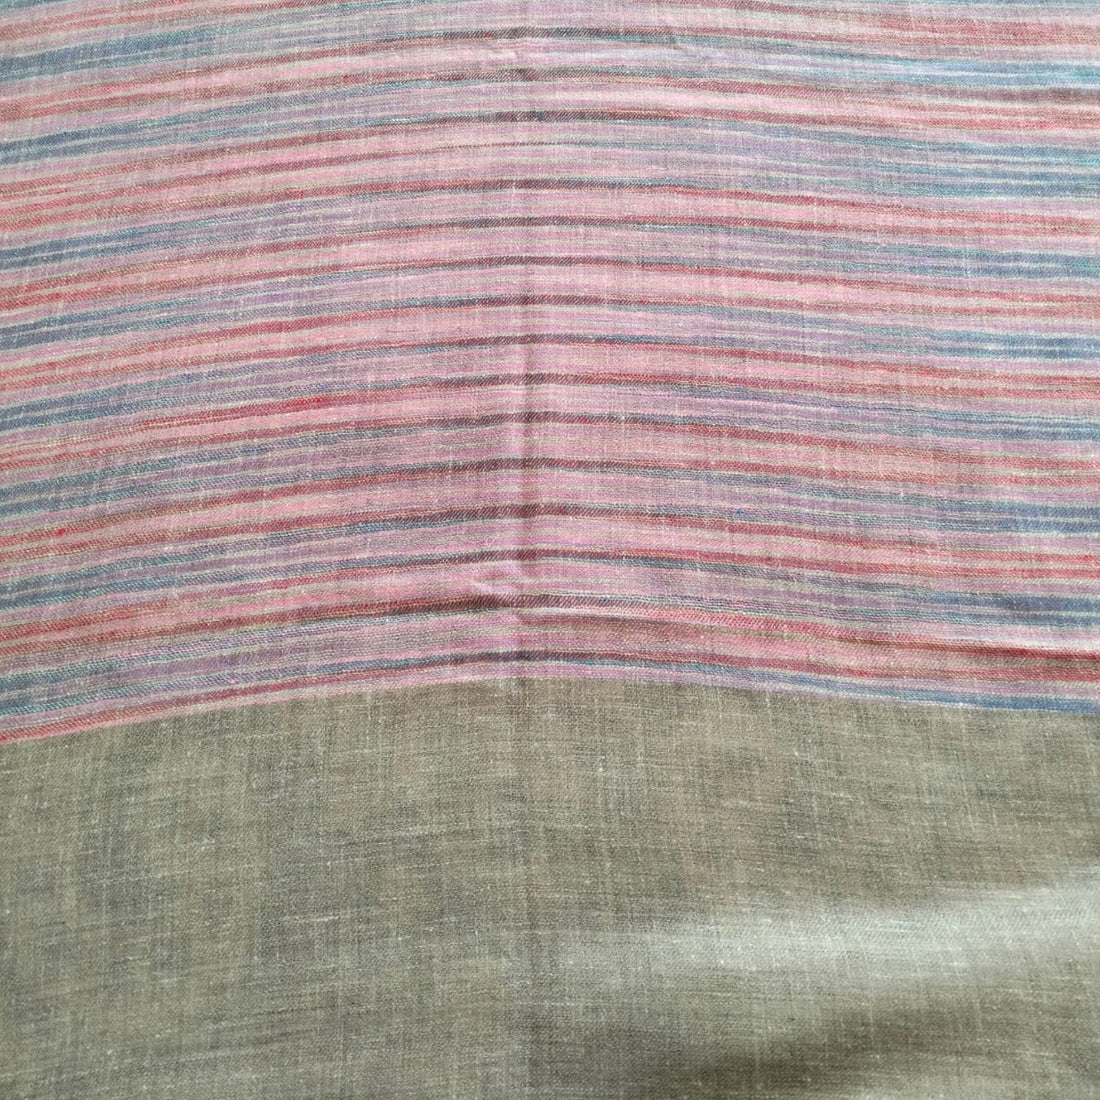 Handwoven Tie Dye Pink Striped Kashmir Pashmina